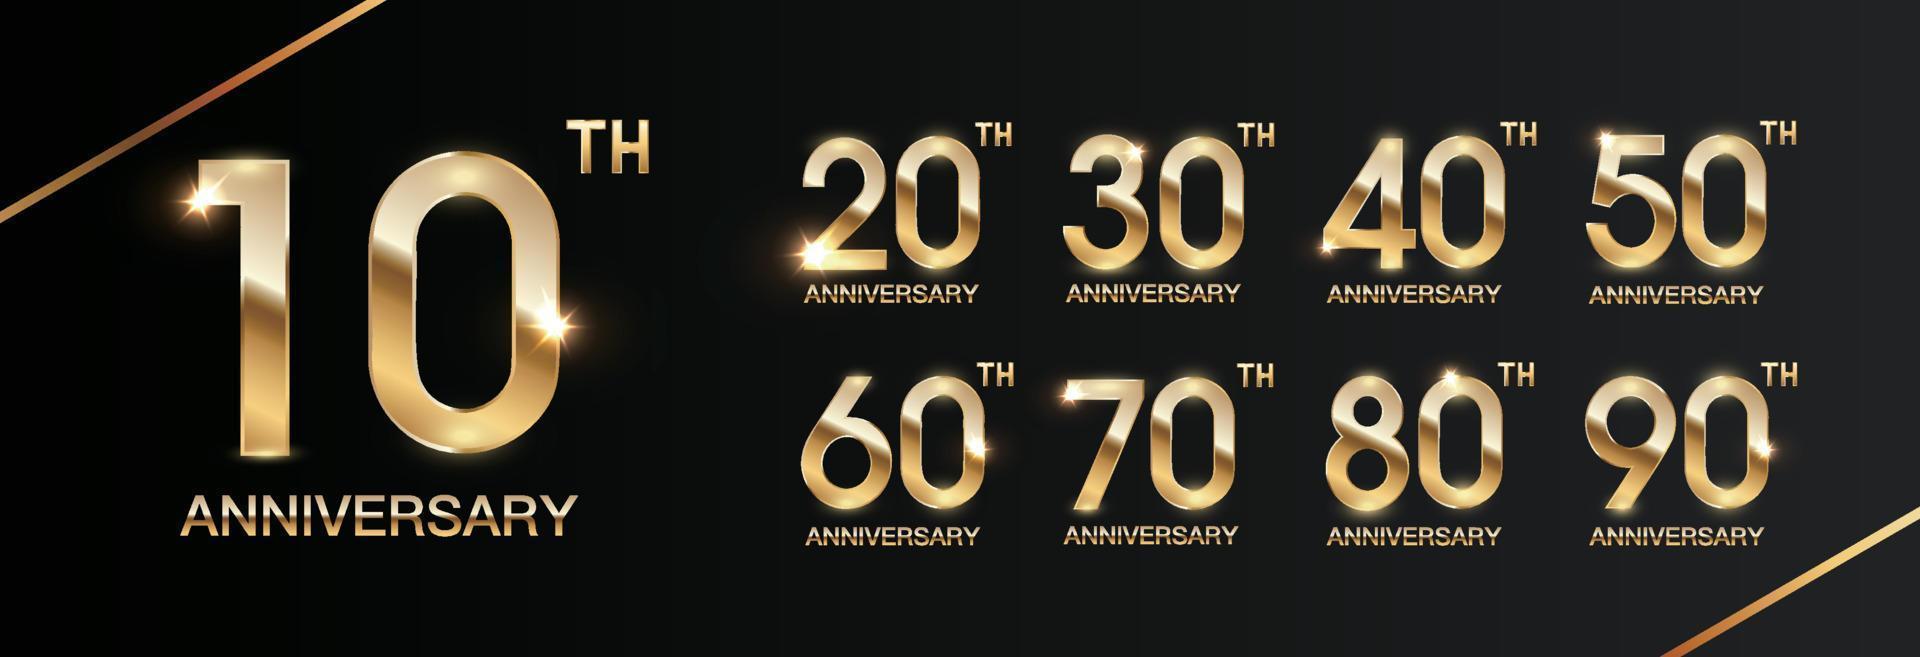 conjunto de diseño de plantilla de celebración de aniversario con texto dorado para evento de celebración de aniversario. vector